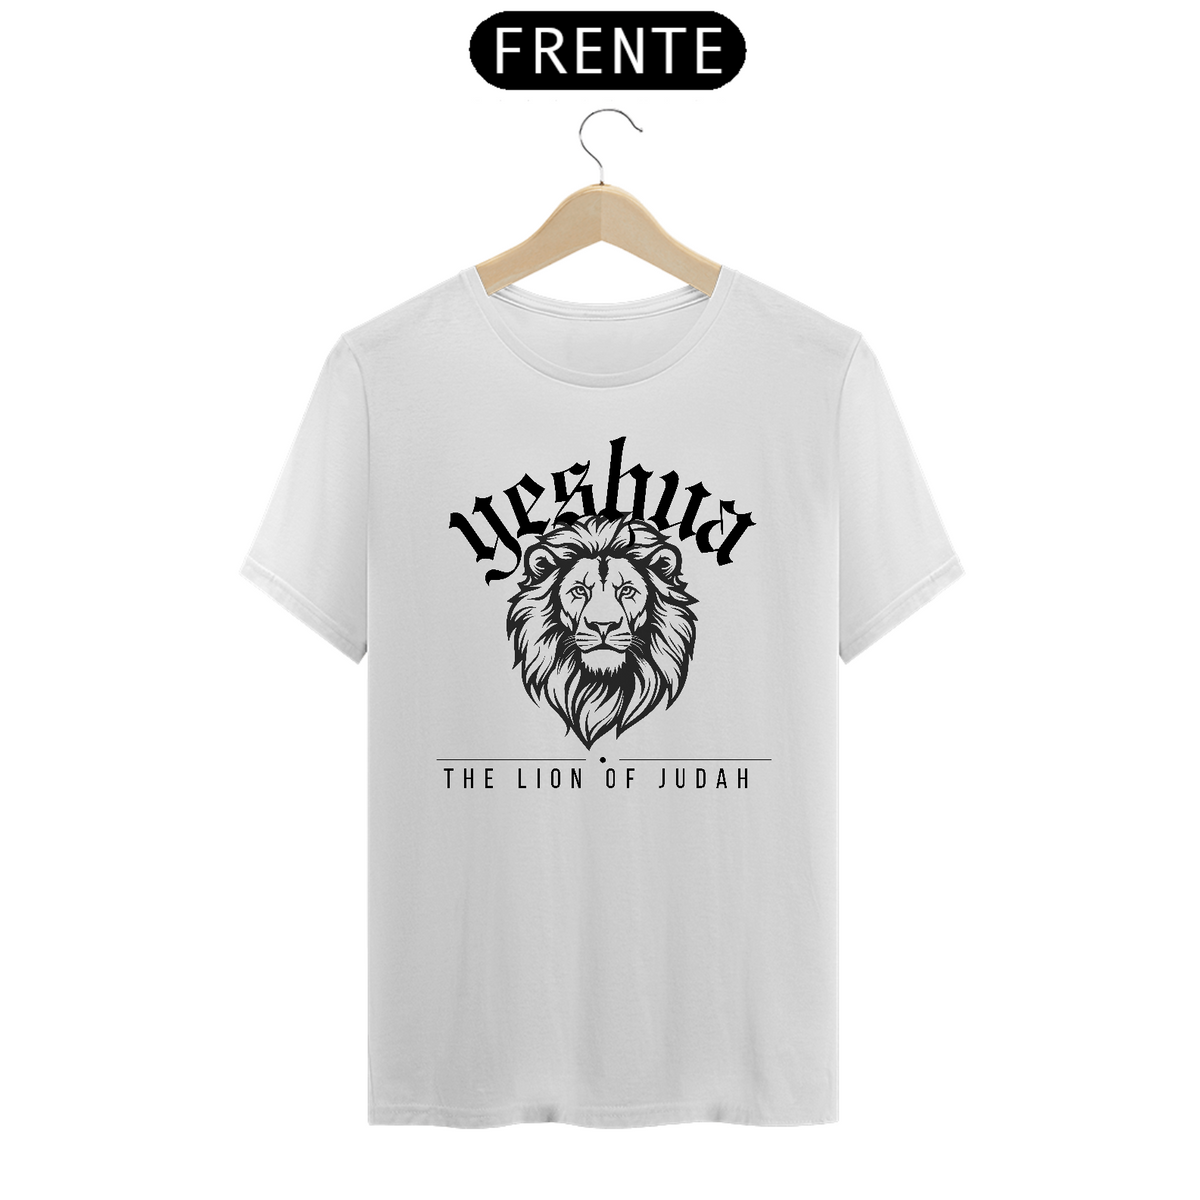 Nome do produto: The lion of judah 